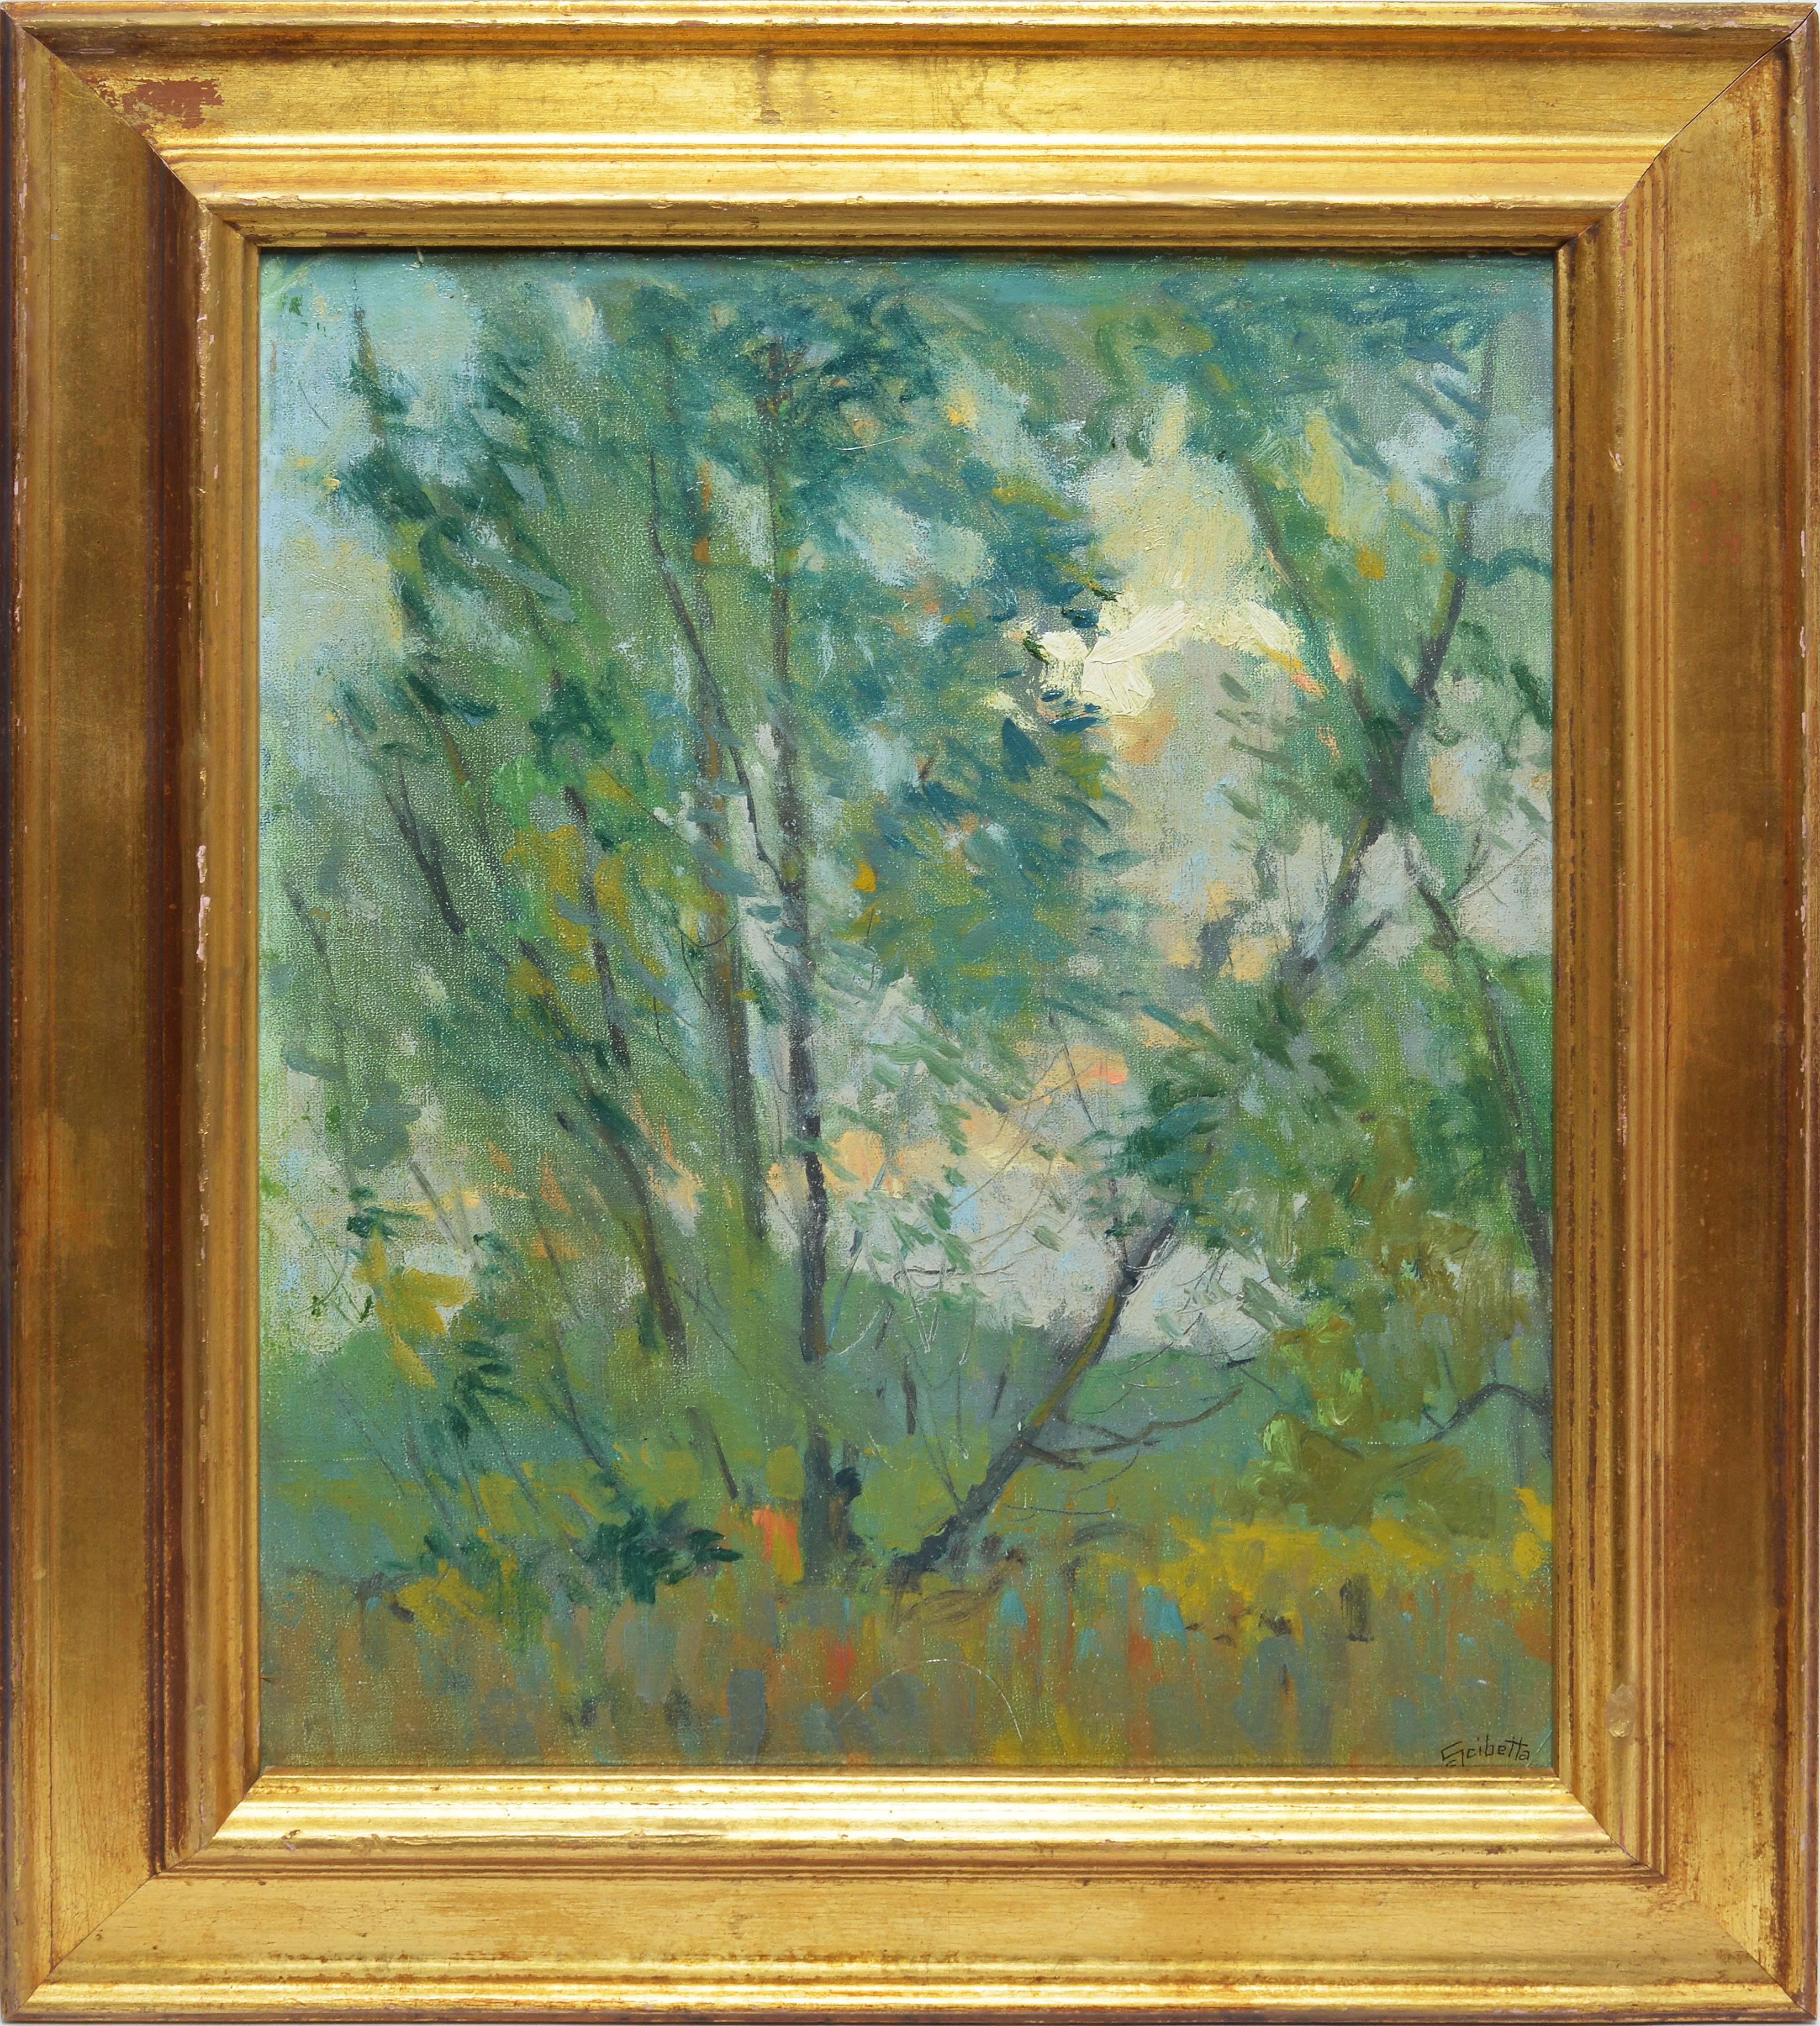 Calogero Scibetta Landscape Painting - Impressionist View of Deleware Park, Buffalo NY 1910